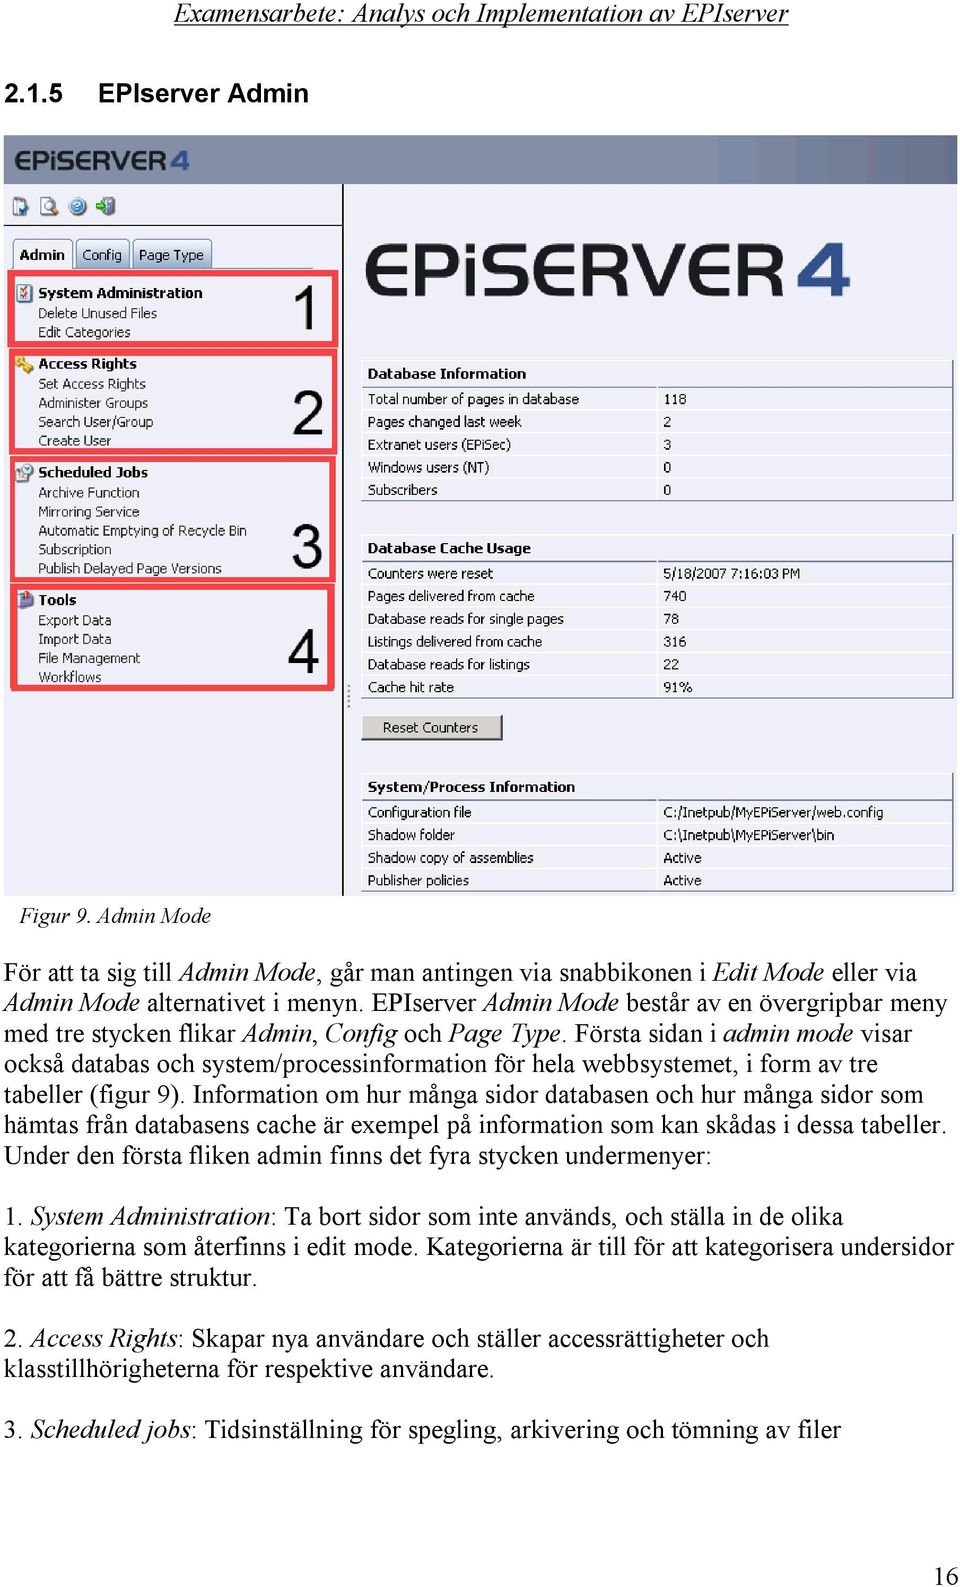 Första sidan i admin mode visar också databas och system/processinformation för hela webbsystemet, i form av tre tabeller (figur 9).